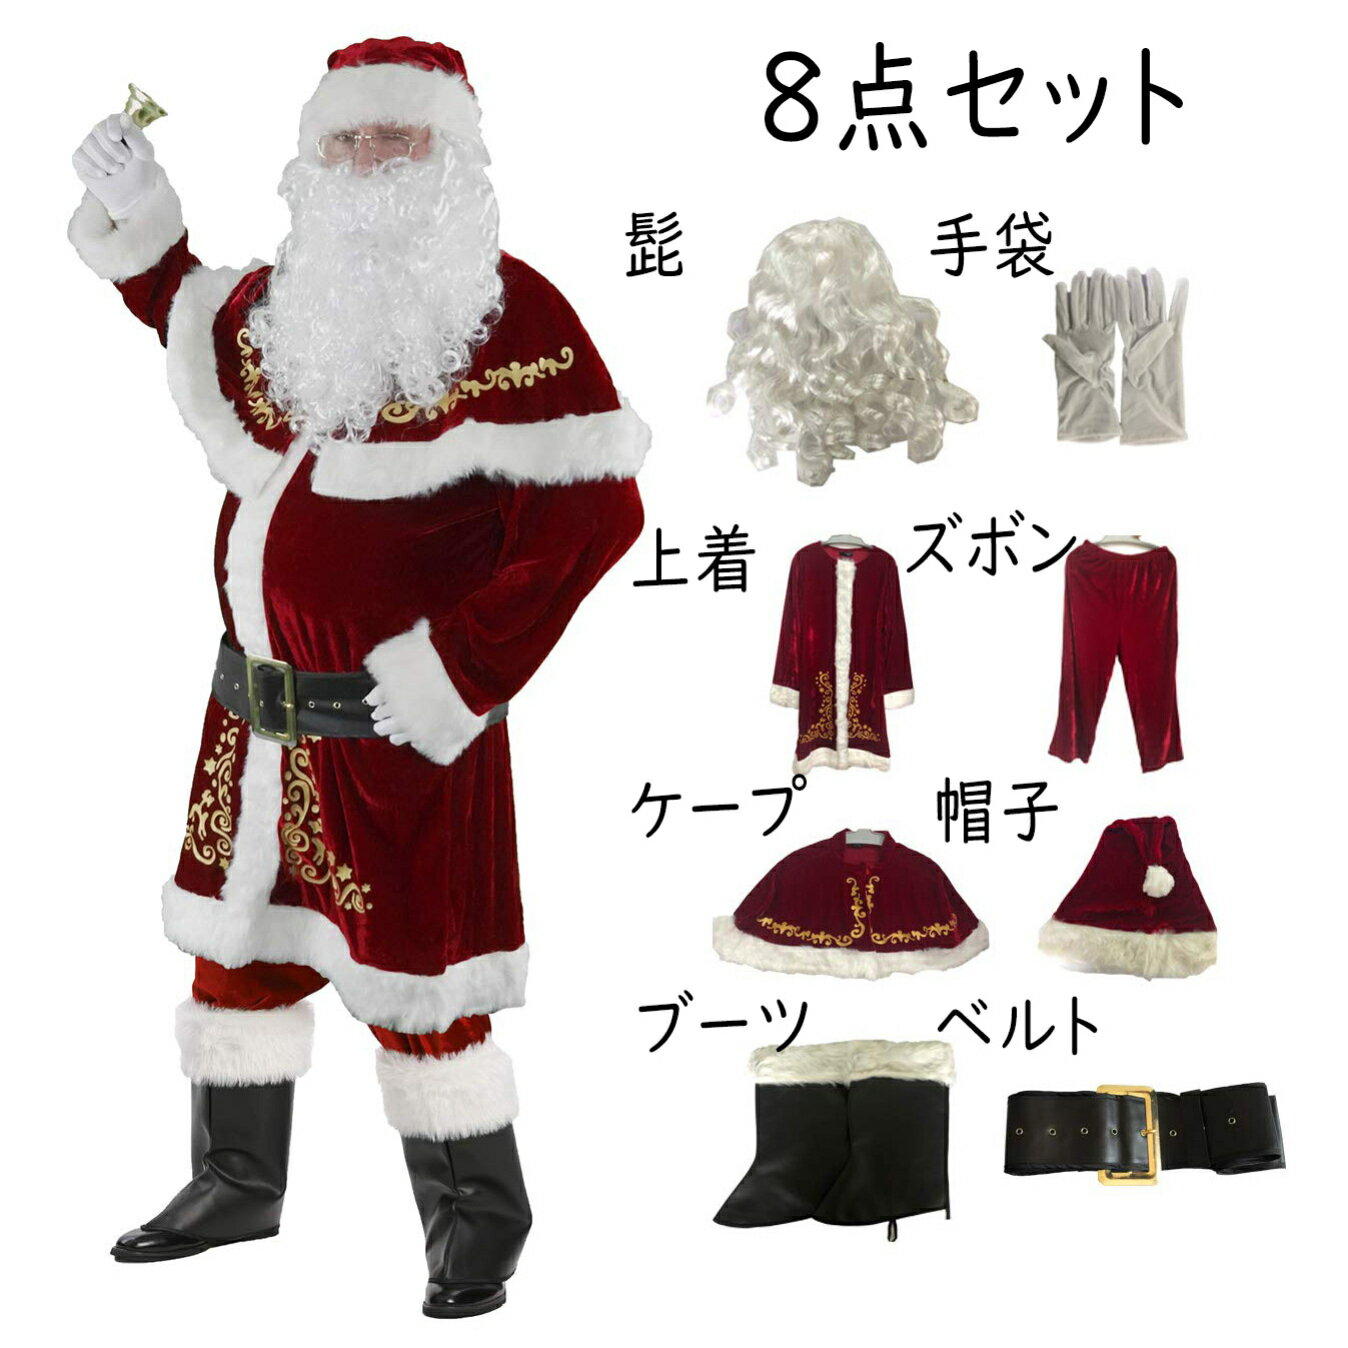 サンタクロース コスプレ 衣装 メンズ 8点セット クリスマス サンタクロース 衣装 豪華 8点セット サンタ コスプレ 男性用 サンタコス コスチューム 本格 髭 袋 大きいサイズ